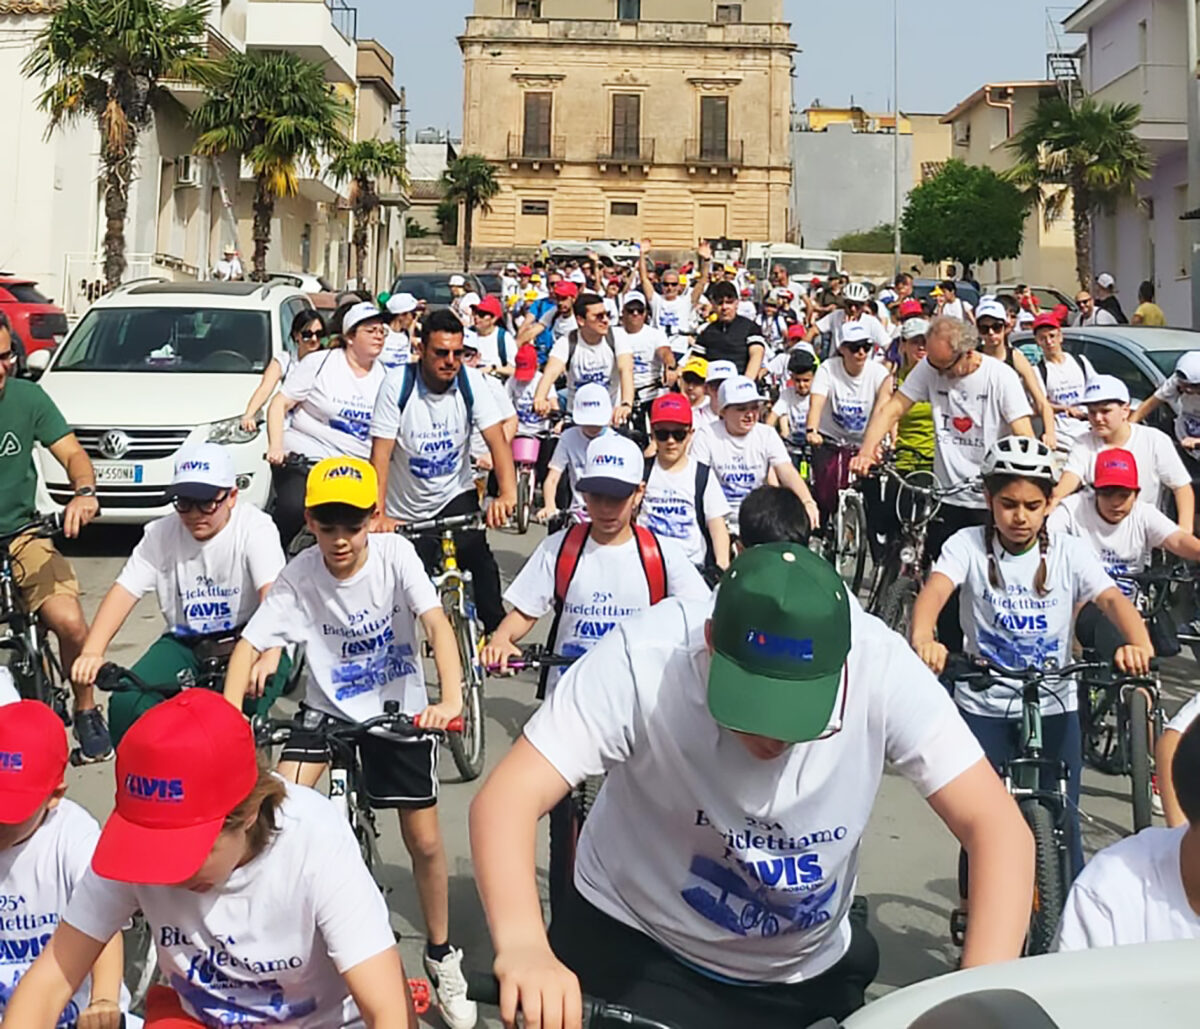 Rosolini pedala per la solidarietà: la “Biciclettiamo” Avis unisce la comunità nella donazione di sangue